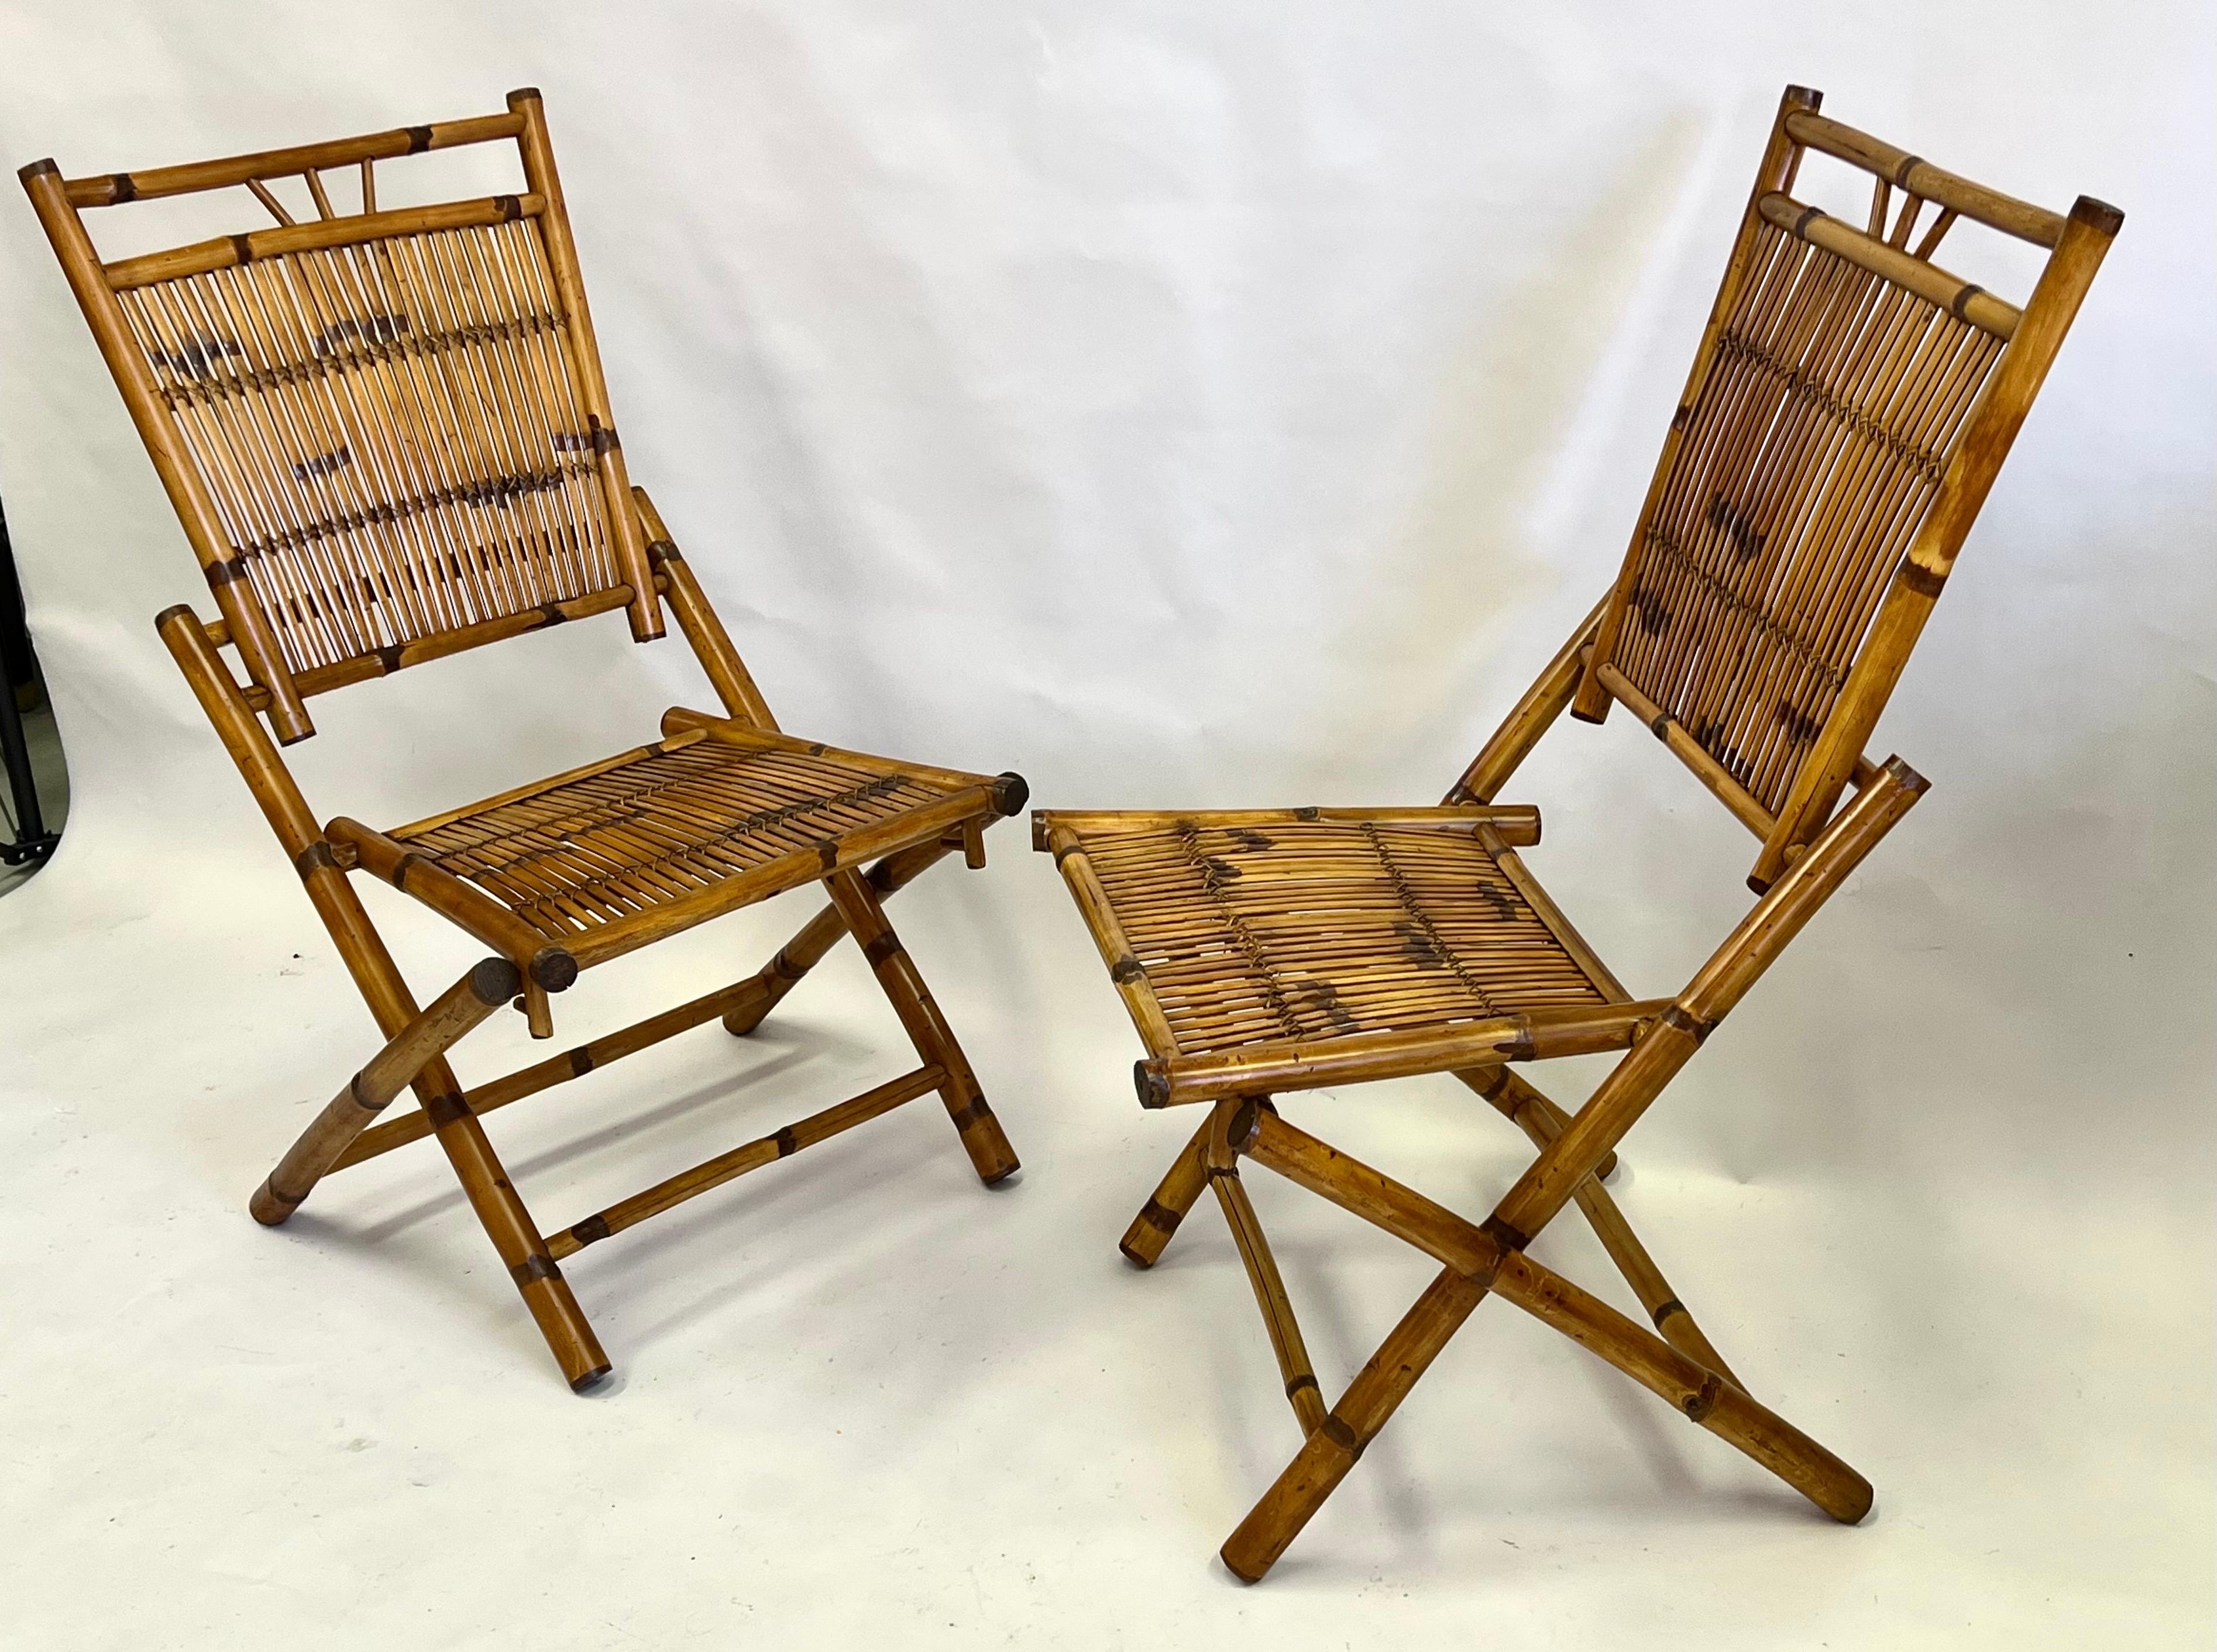 Ein seltenes und elegantes Paar französischer neoklassizistischer Rattan- und Bambussessel aus der Mitte des Jahrhunderts. Die Stühle vereinen eine nüchterne neoklassizistische Sensibilität mit einem modernen Look. Die Stücke haben eine klassische